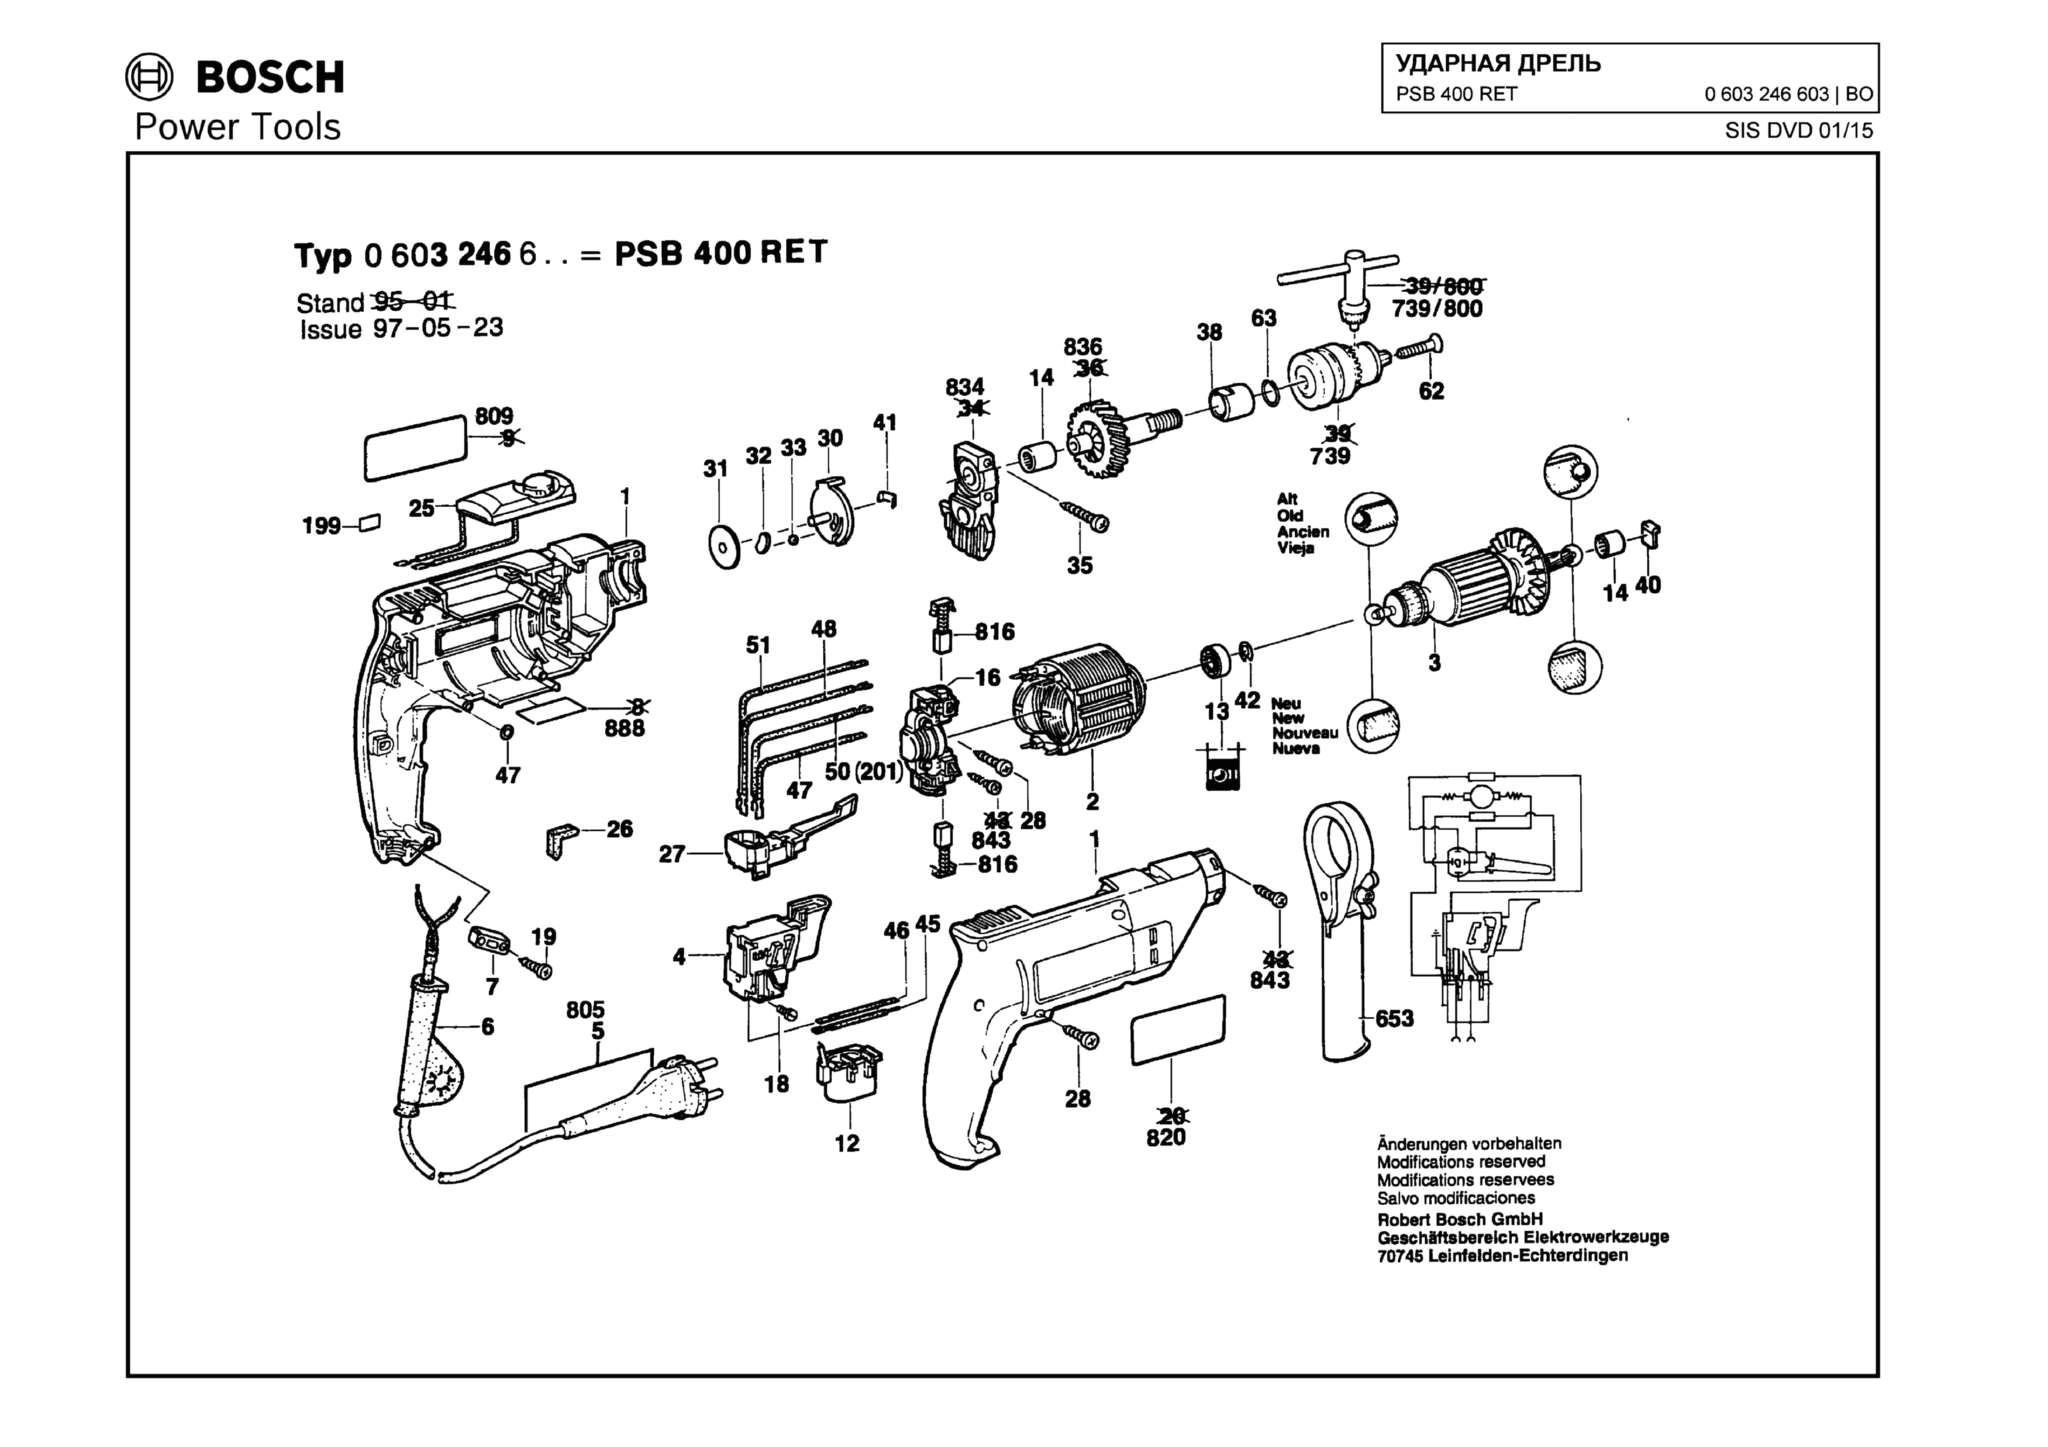 Запчасти, схема и деталировка Bosch PSB 400 RET (ТИП 0603246603)